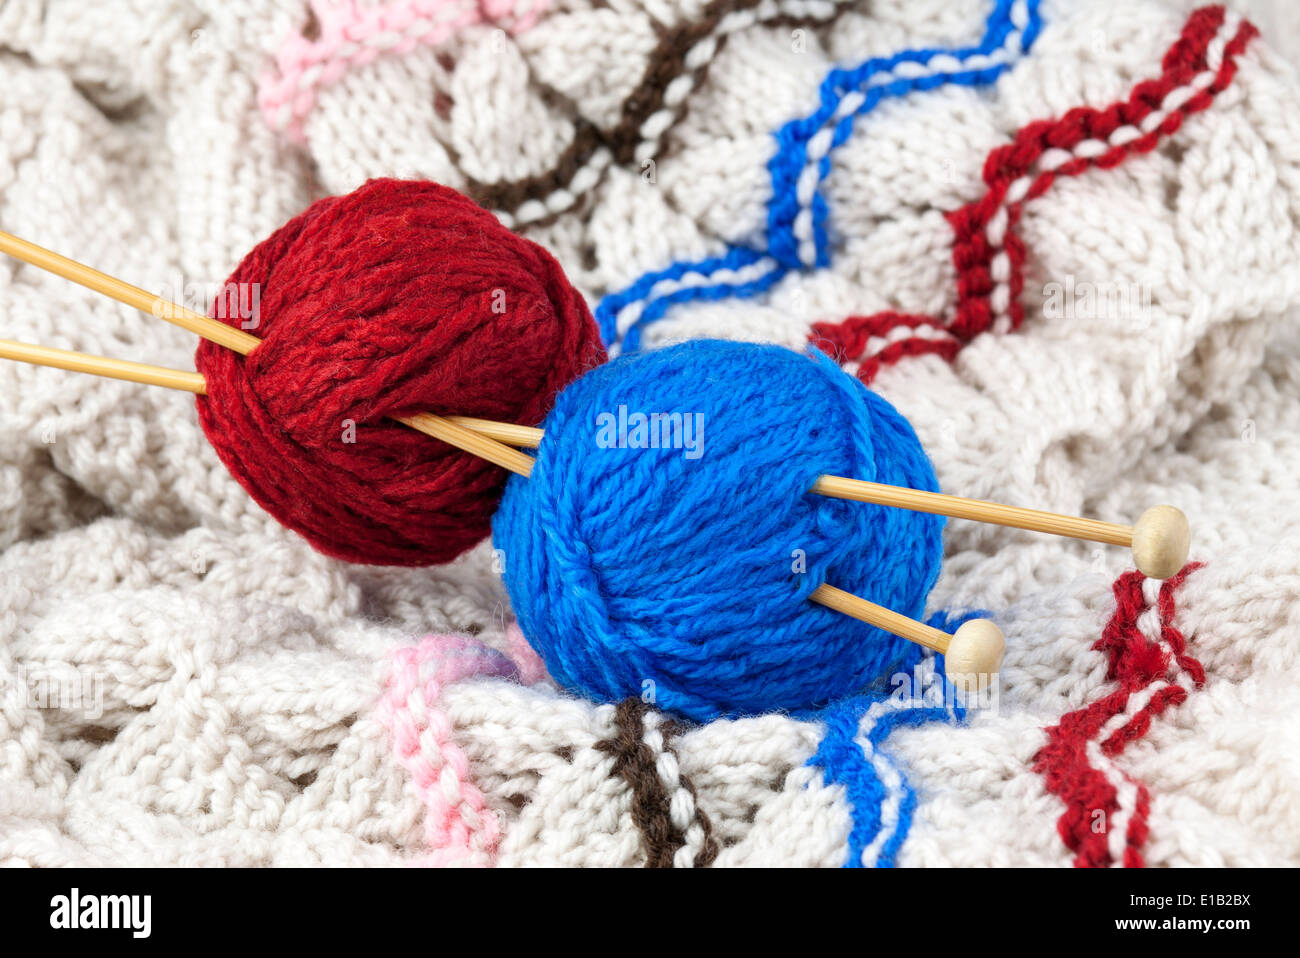 Les fils rouge et bleu avec aiguille à tricoter Banque D'Images